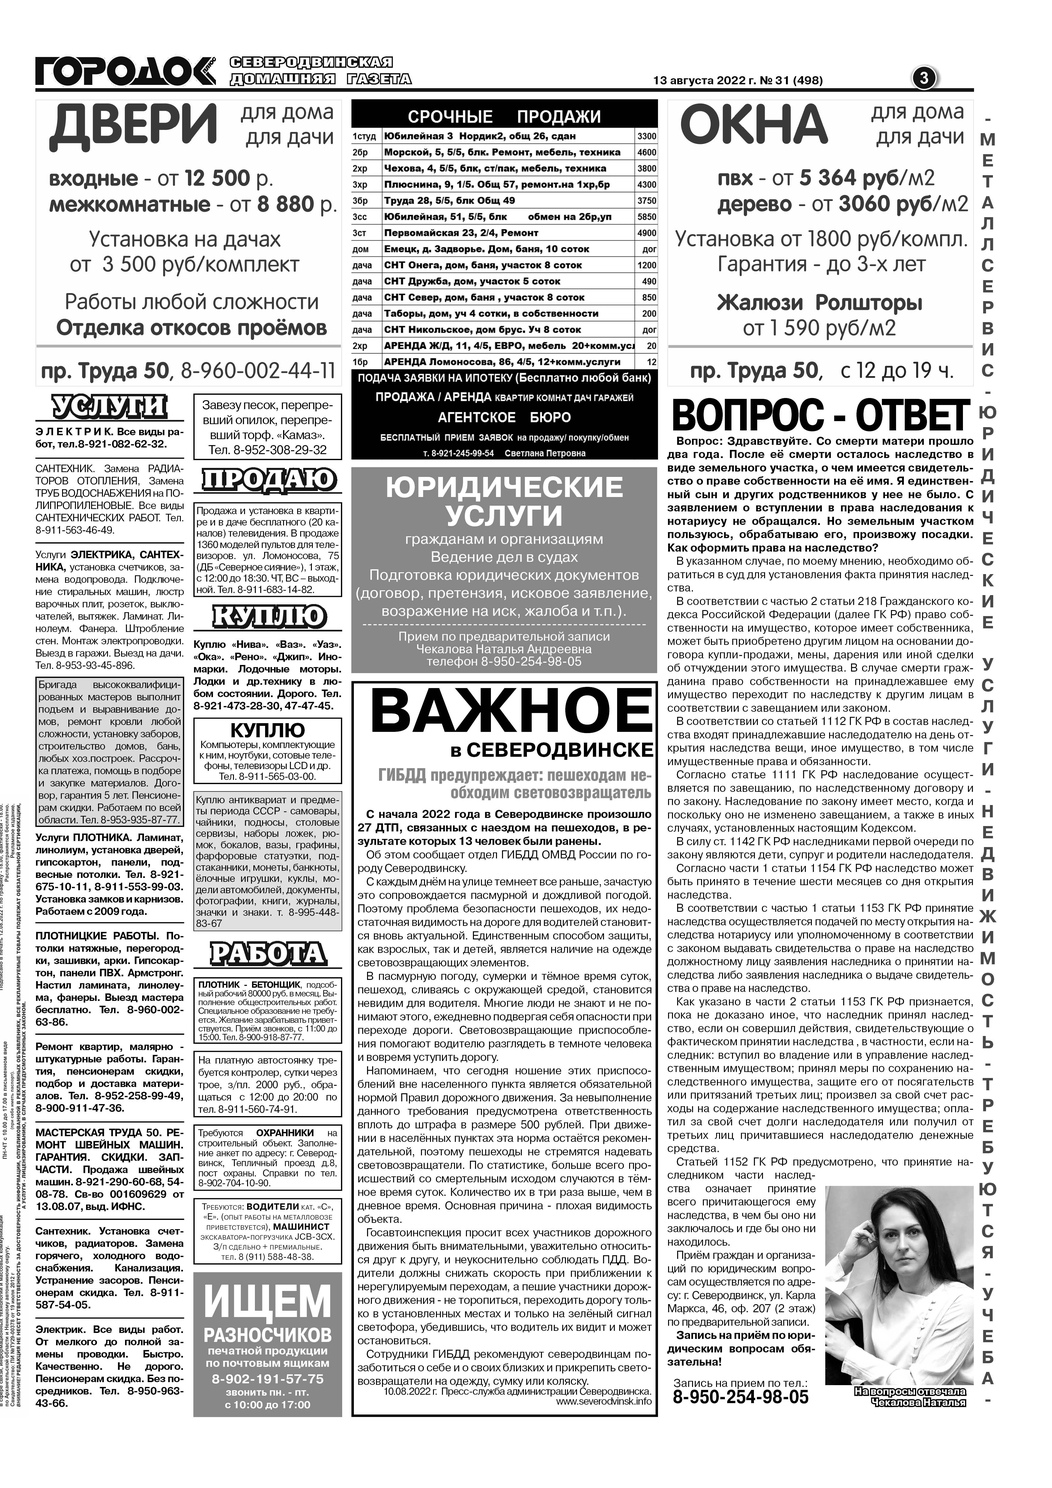 Газета Городок Плюс №31, страница 3, 13 августа 2022.